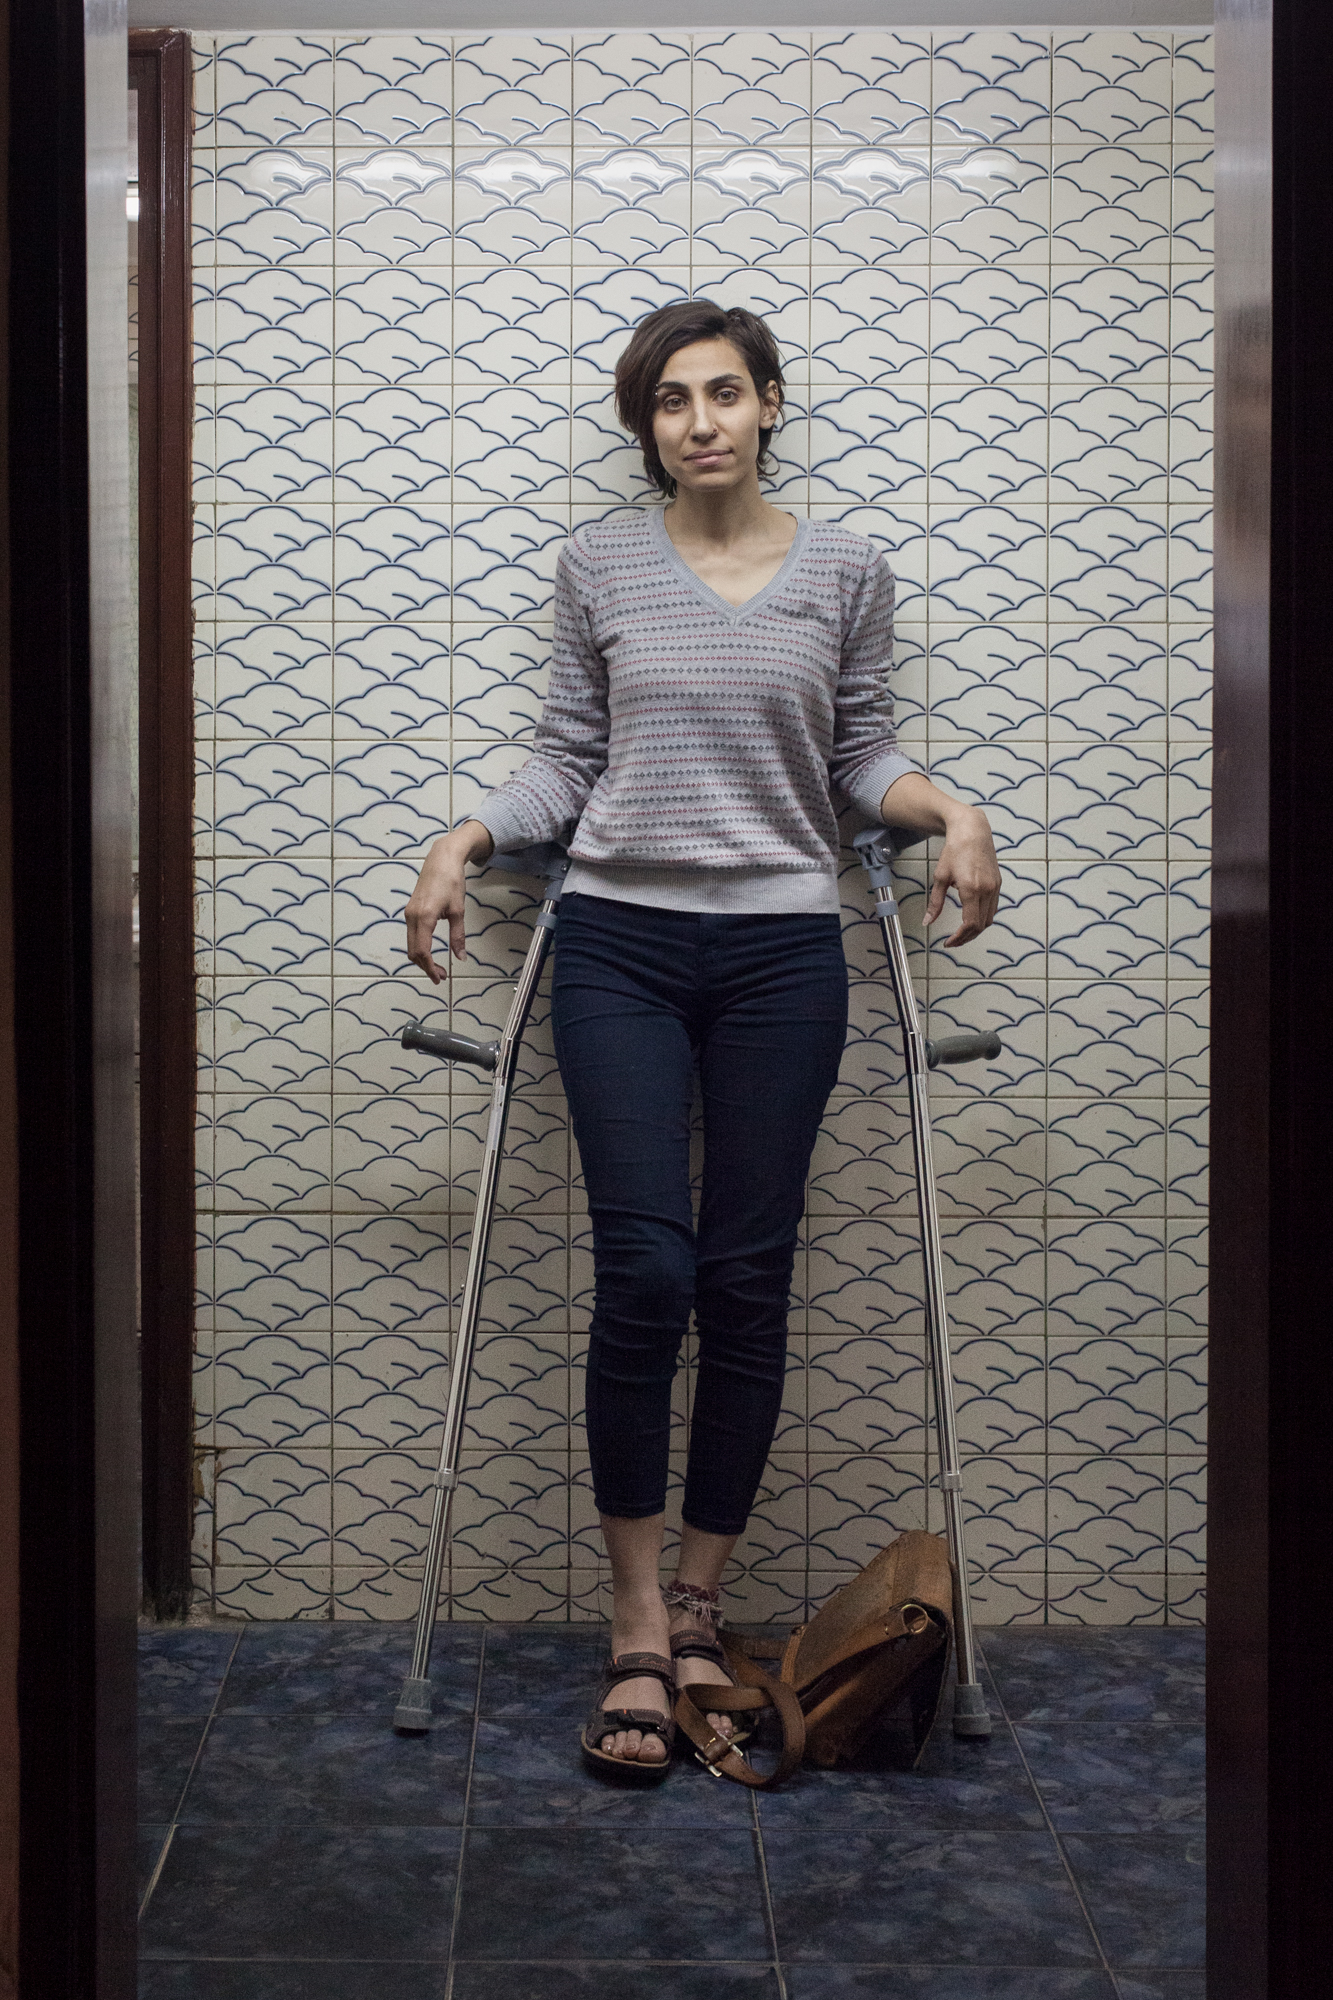 Portrait Samaa Etturkey, 26 years old, war verschleiert und verheiratet, hat die Scheidung entschieden und den Schleier abgemacht. Sie ist Aktivistin und arbeitet in einer Organisation für Frauenrechte.Frauen in Aegypten, Women in Egypt, Le Caire, Kairo